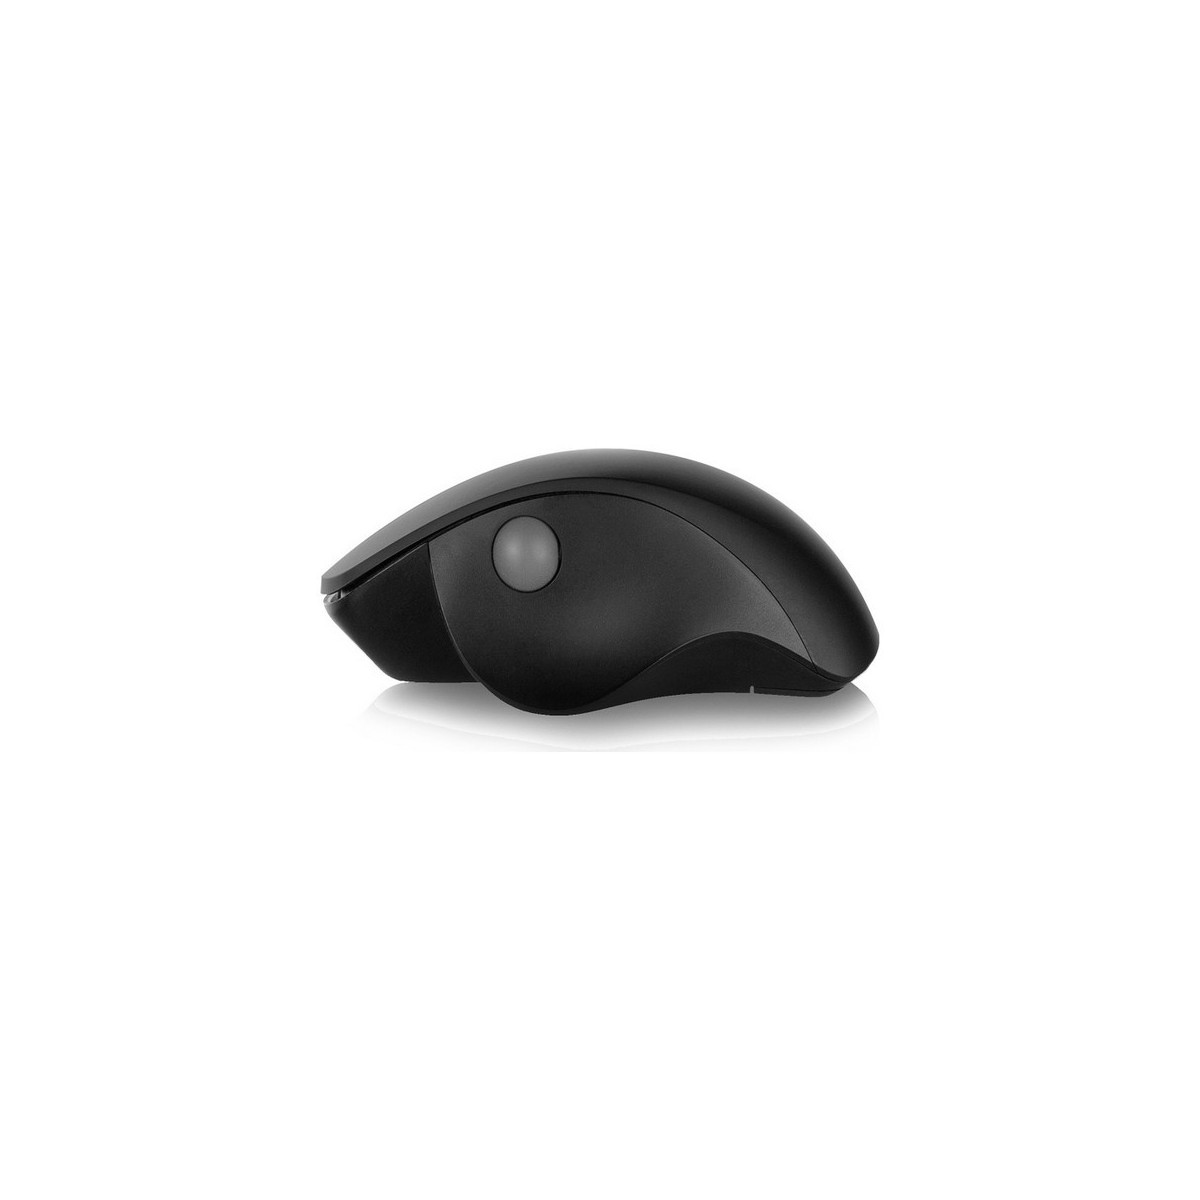 EWENT Schnurlose Schwarz Mouse Wireless Maus